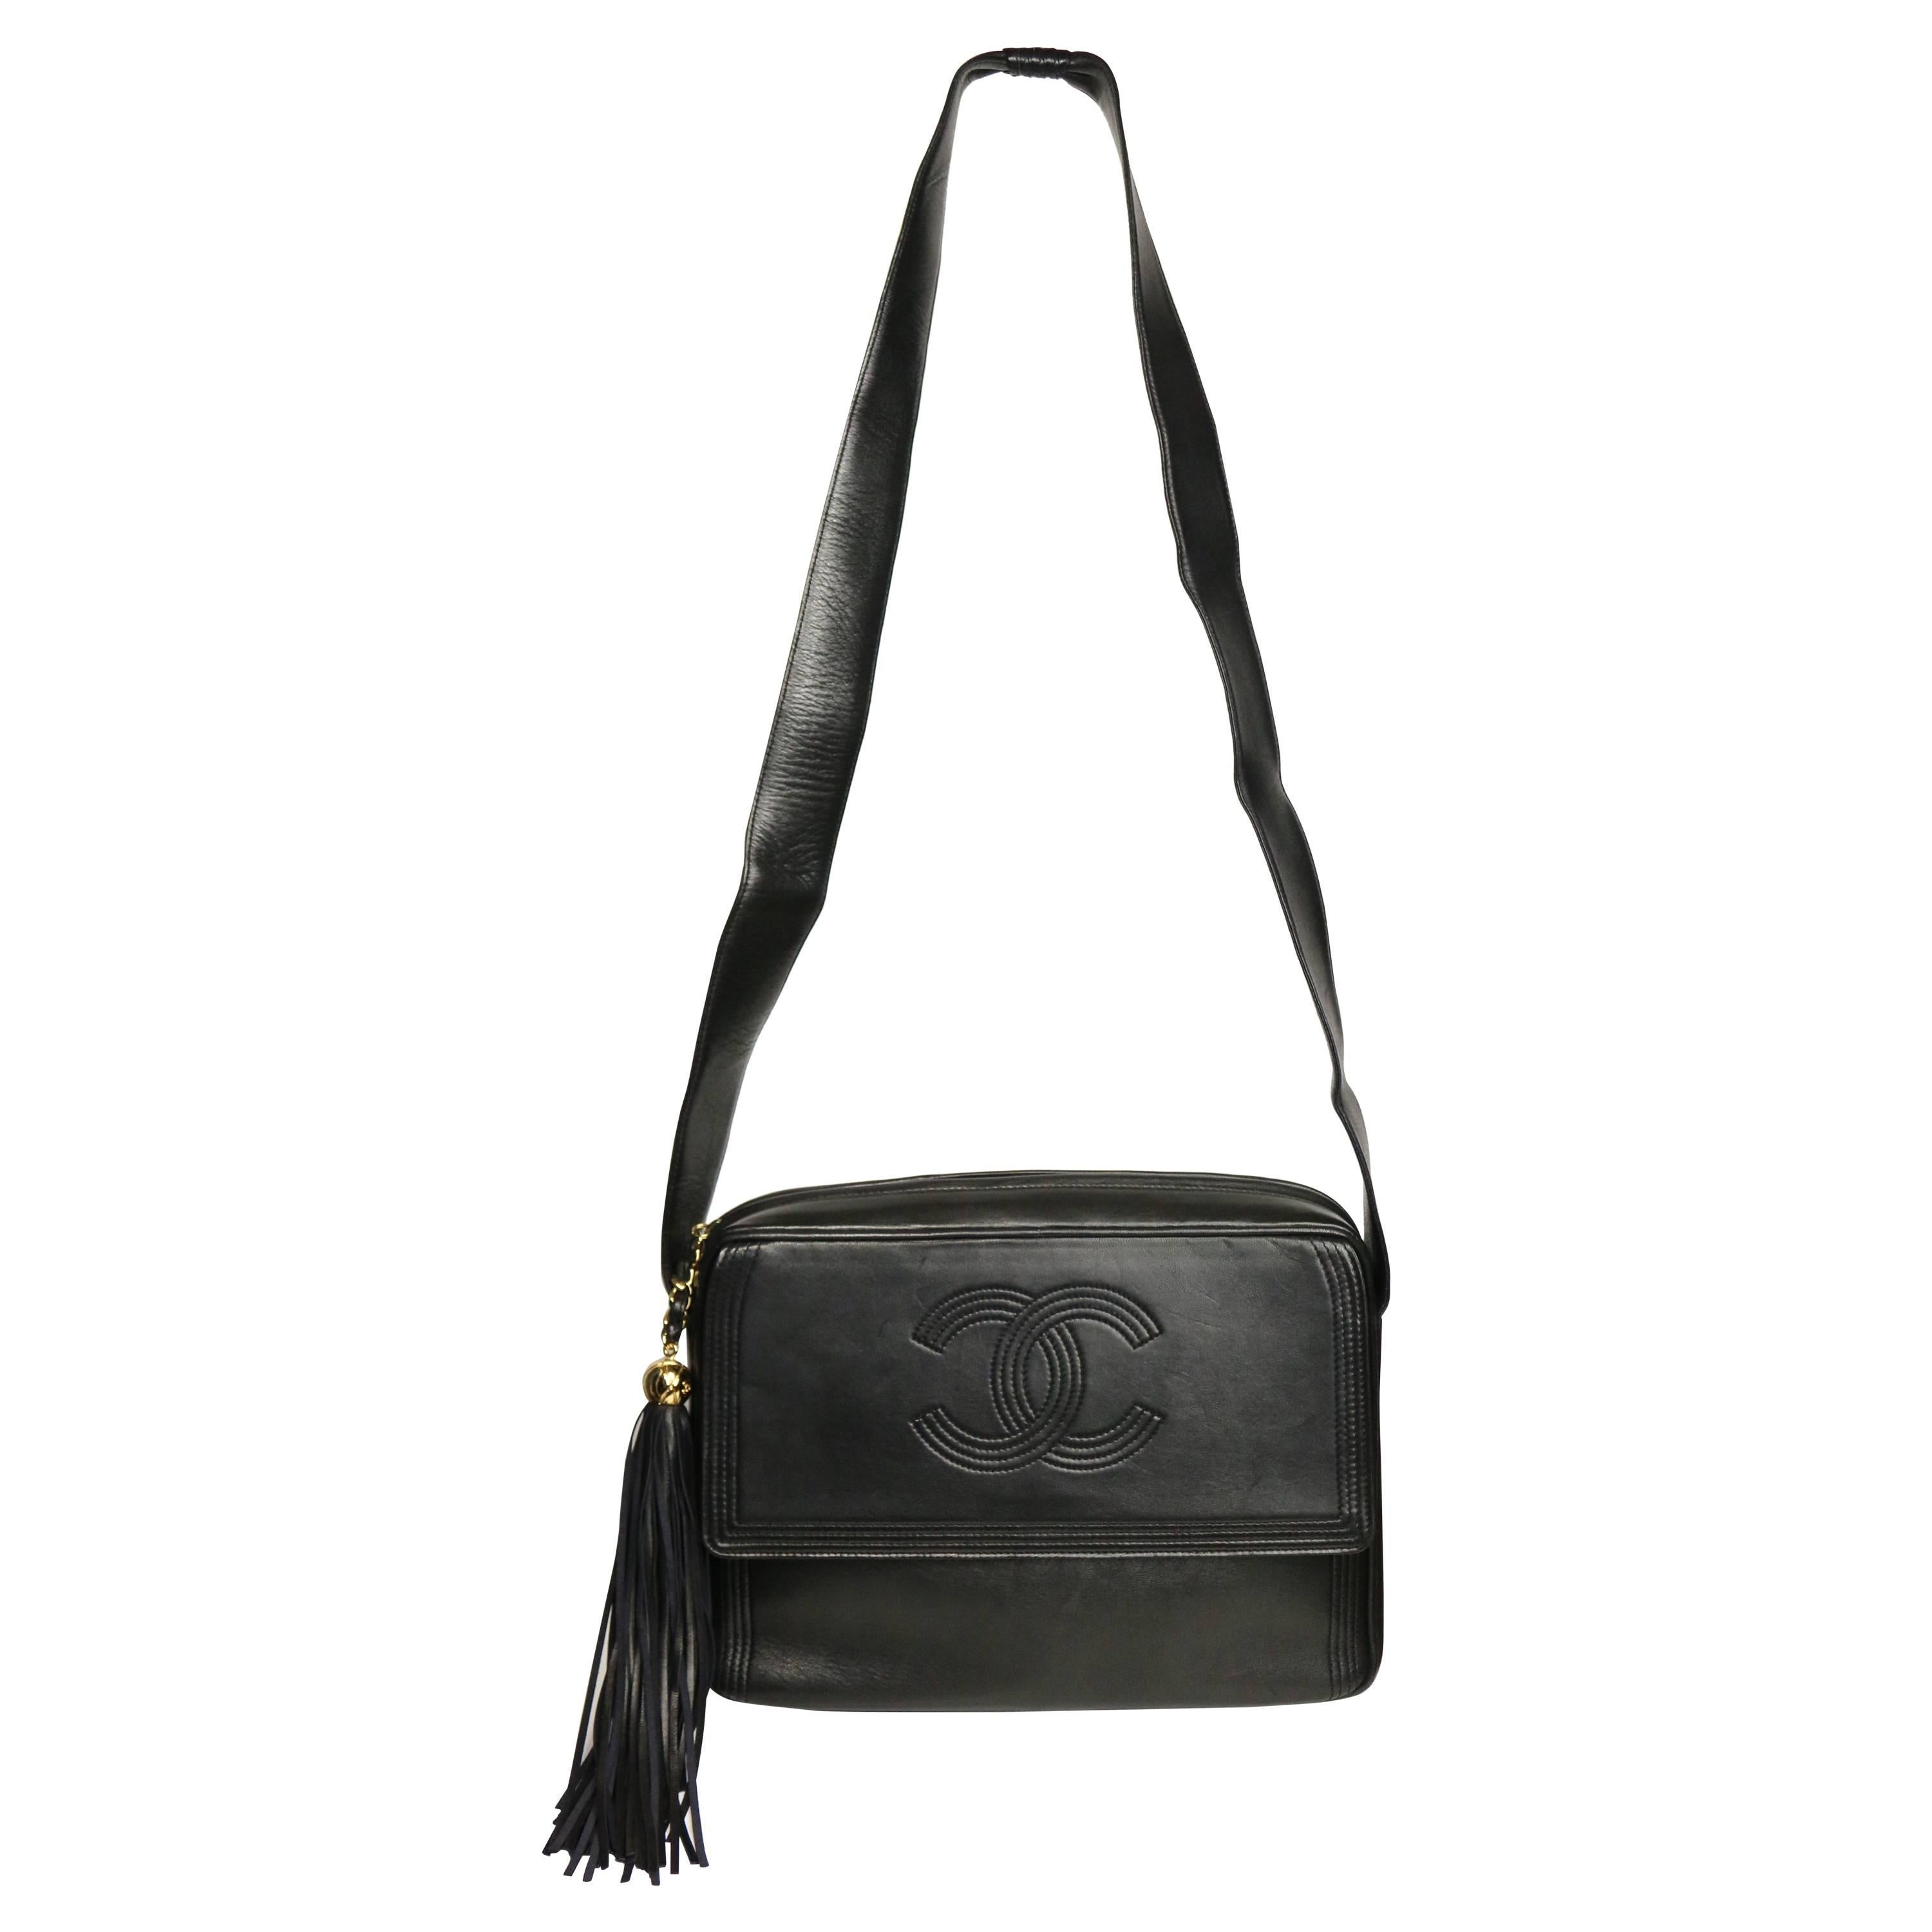 Vintage Chanel Black Leather Flap Bag with Tassel